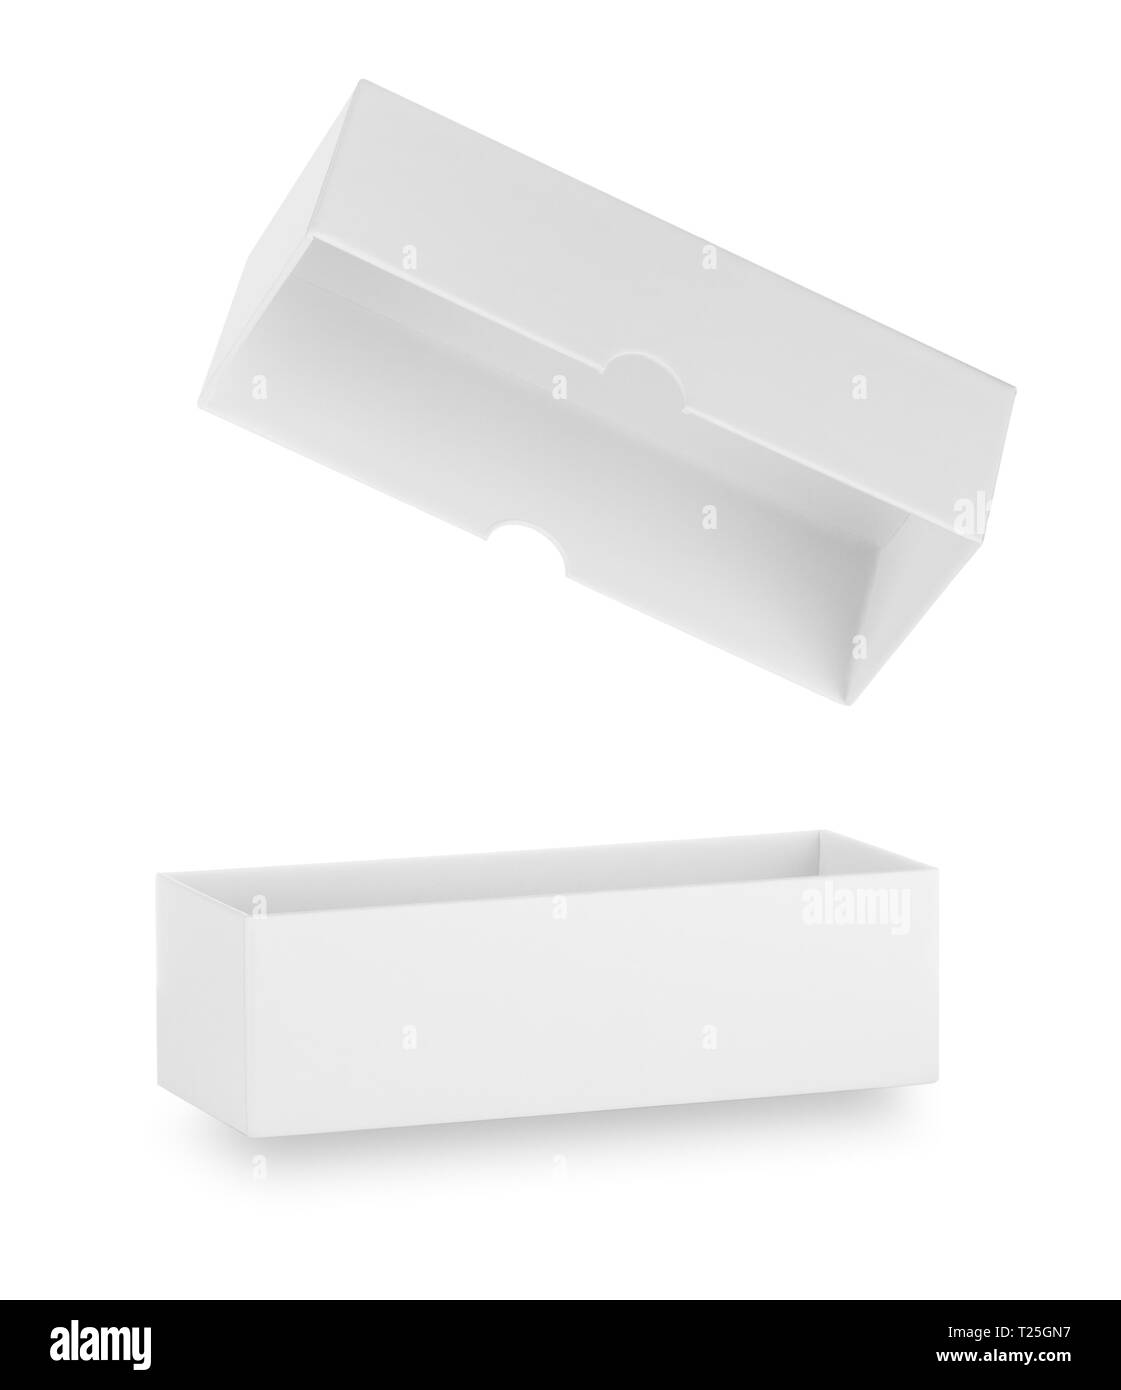 Boîte blanche avec couvercle ouvert isolé sur fond blanc Banque D'Images